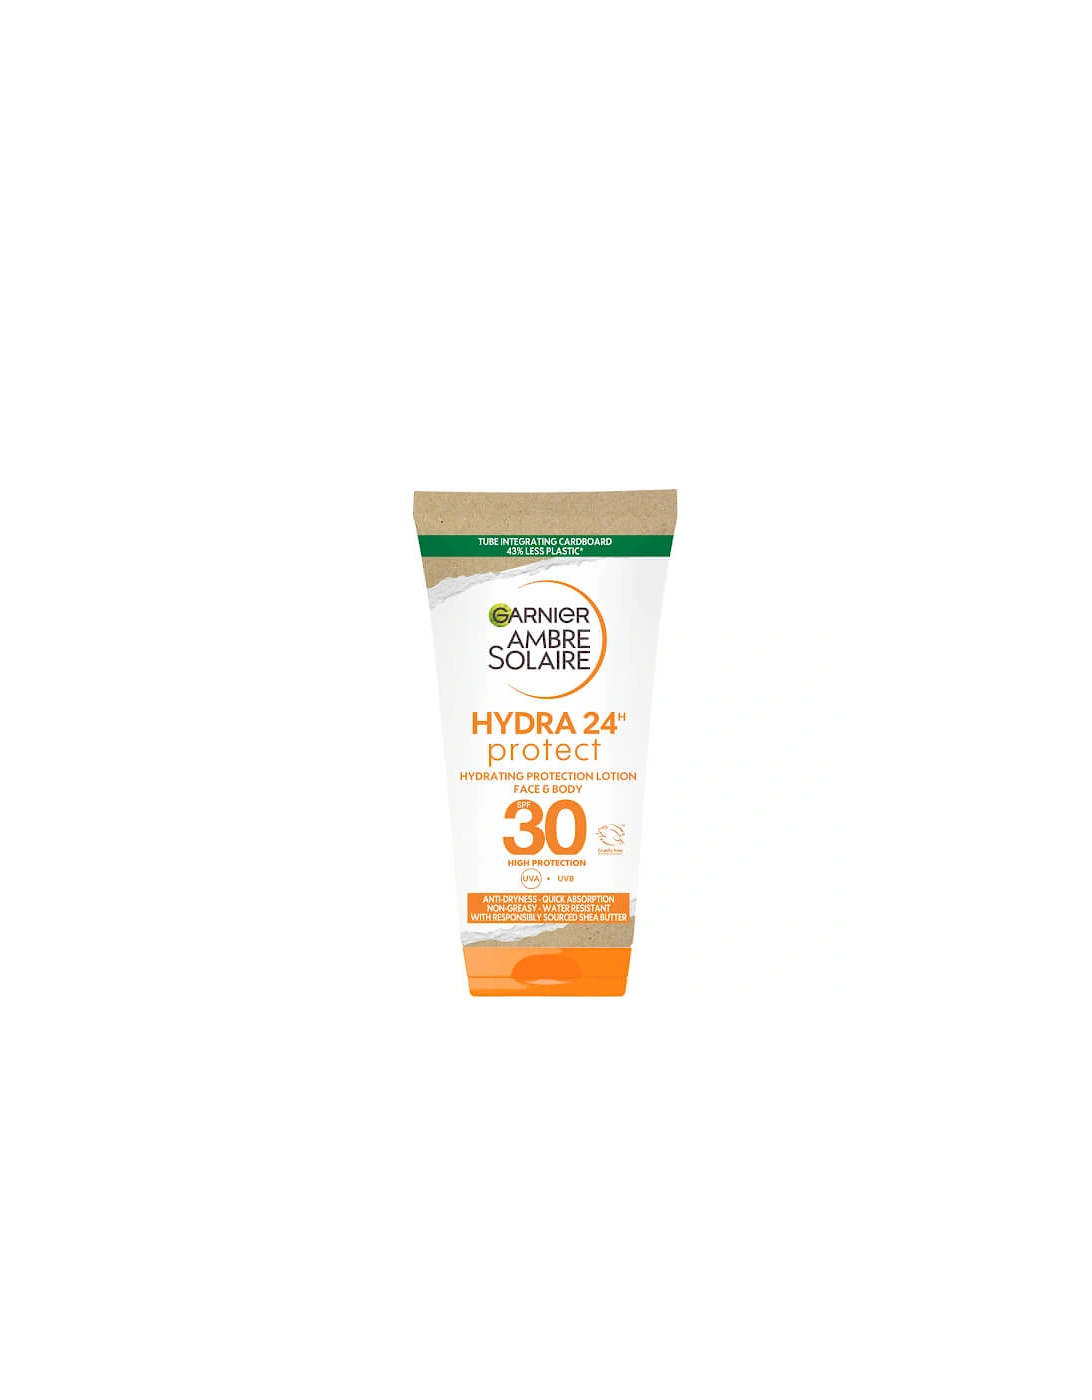 Ambre Solaire Ultra-Hydrating Sun Cream SPF 30 50ml Travel Size - Garnier, 2 of 1